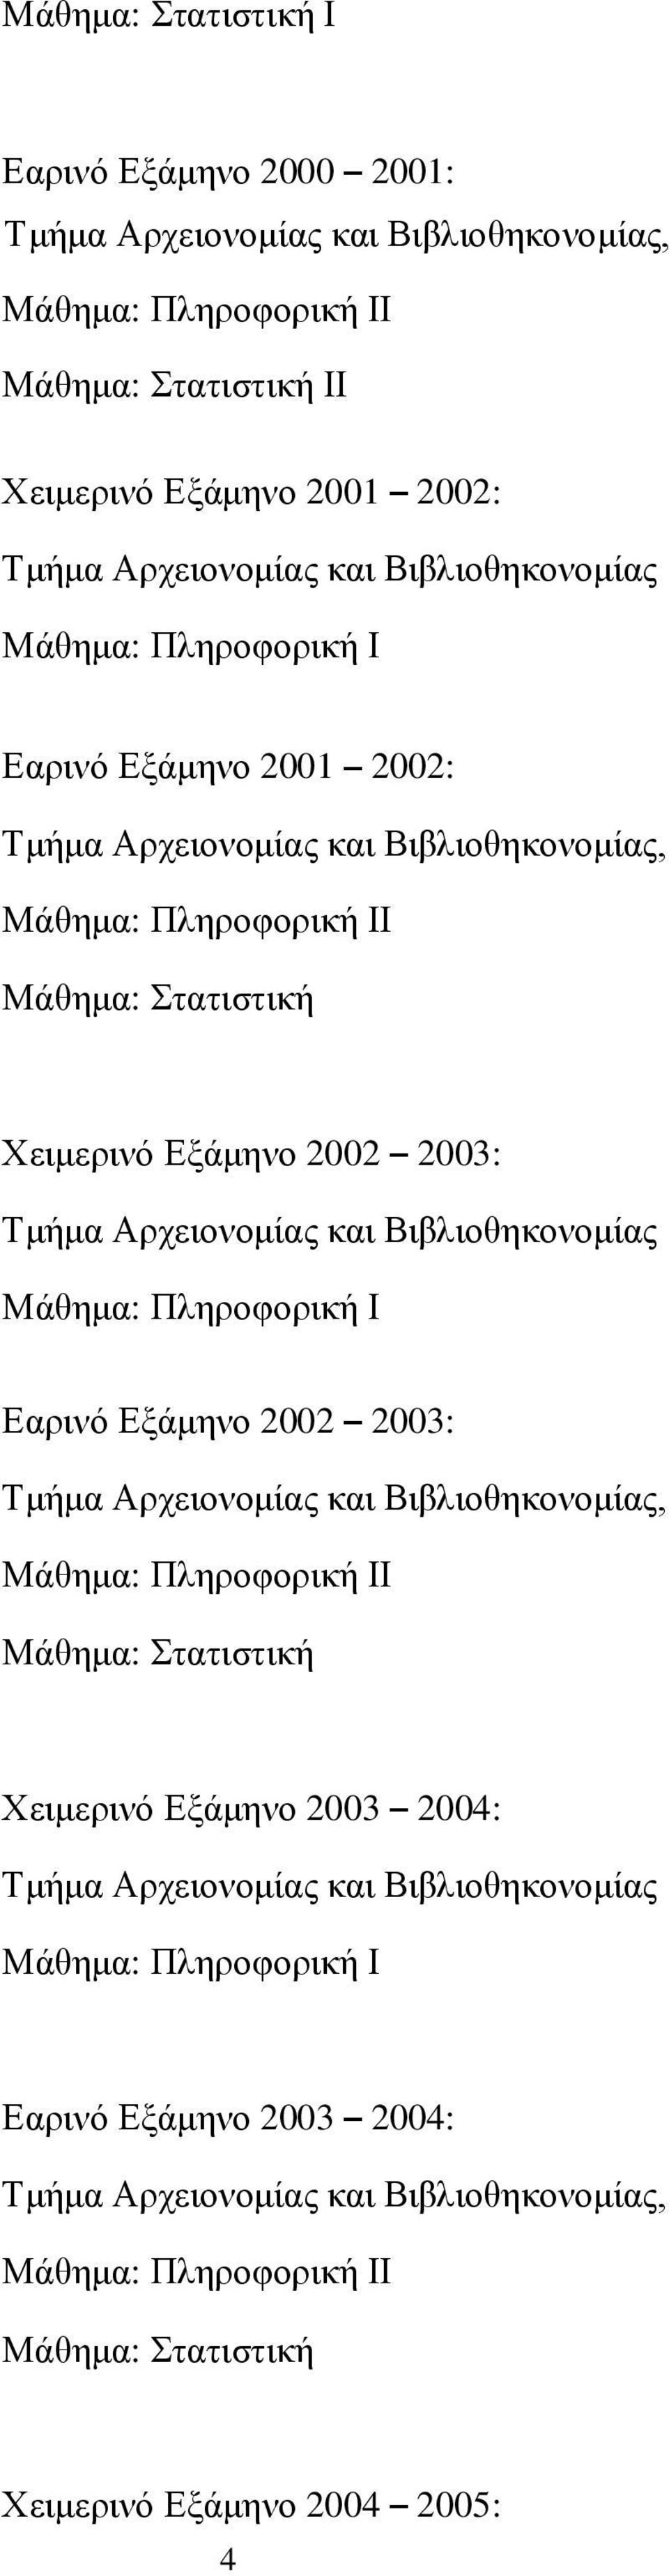 2003: Εαρινό Εξάμηνο 2002 2003: Ι Χειμερινό Εξάμηνο 2003